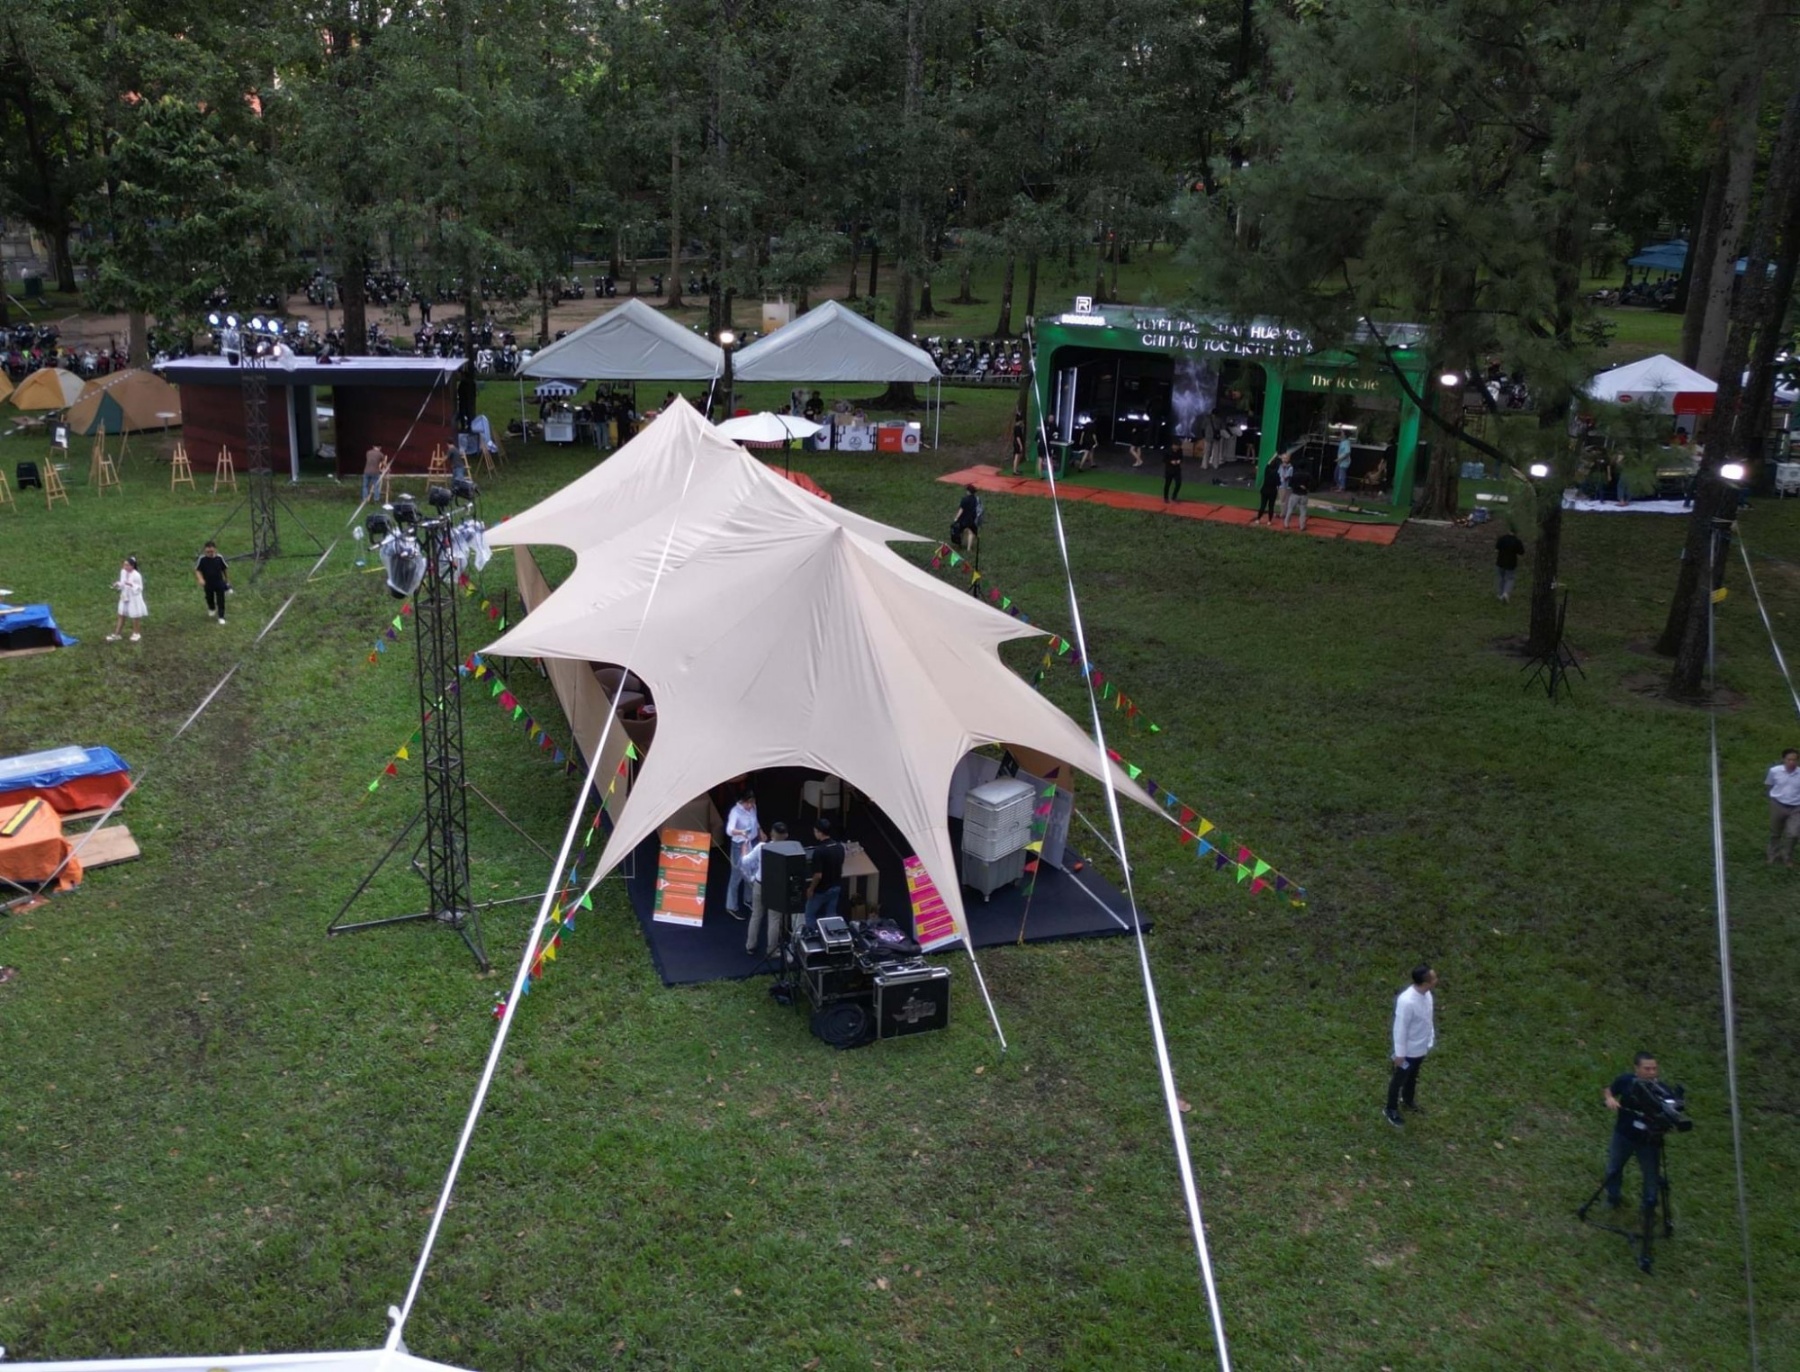 Dưới những tán cây xanh trong khuôn viên Dinh Thống Nhất, hoạt động cắm trại với lều, bạt, khu vực ăn uống sẽ được tổ chức với quy mô như một bãi camping chuyên nghiệp. Đây là một phần trong chuỗi hoạt động của sự kiện Taste of Saigon được tổ chức bởi artLIVE, kéo dài trong 3 ngày từ 6-7-8/10. 